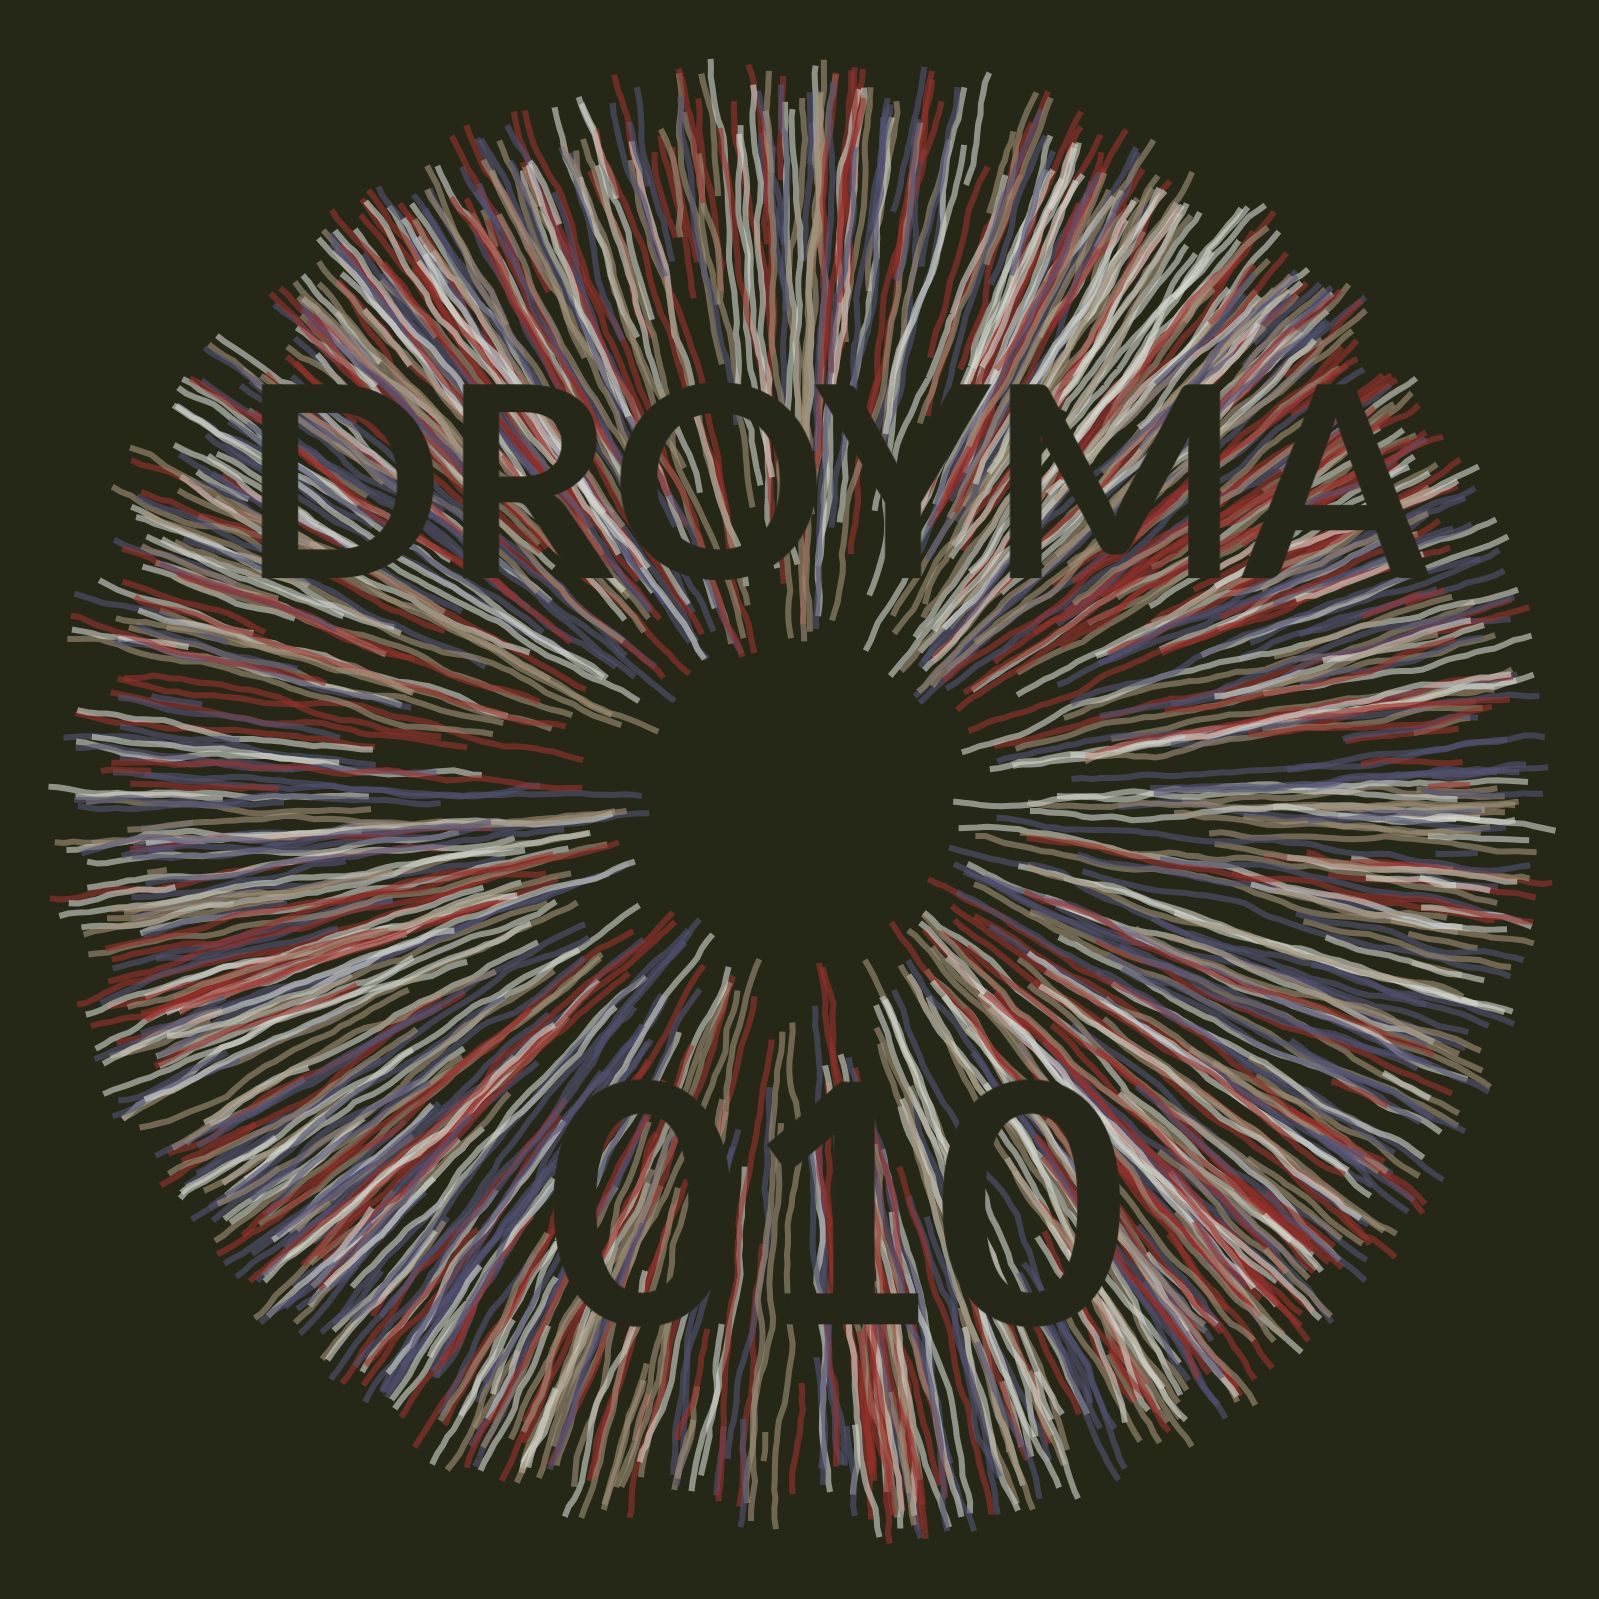 Daxistin Droyma Mix 010 - April 2019